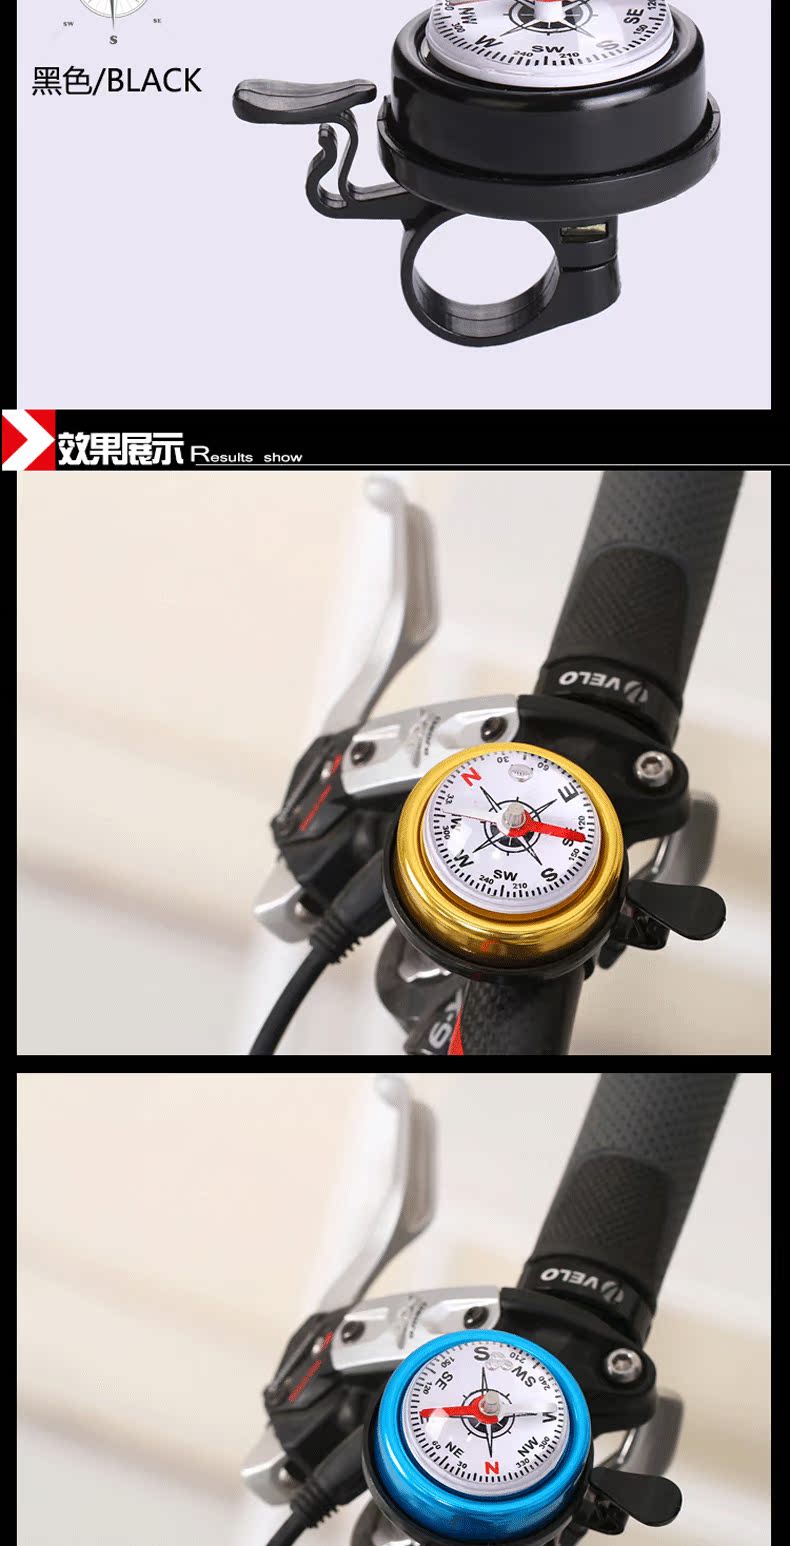 Avertisseur de vélo bell Compass ONLINELOVE - Ref 1451554 Image 10